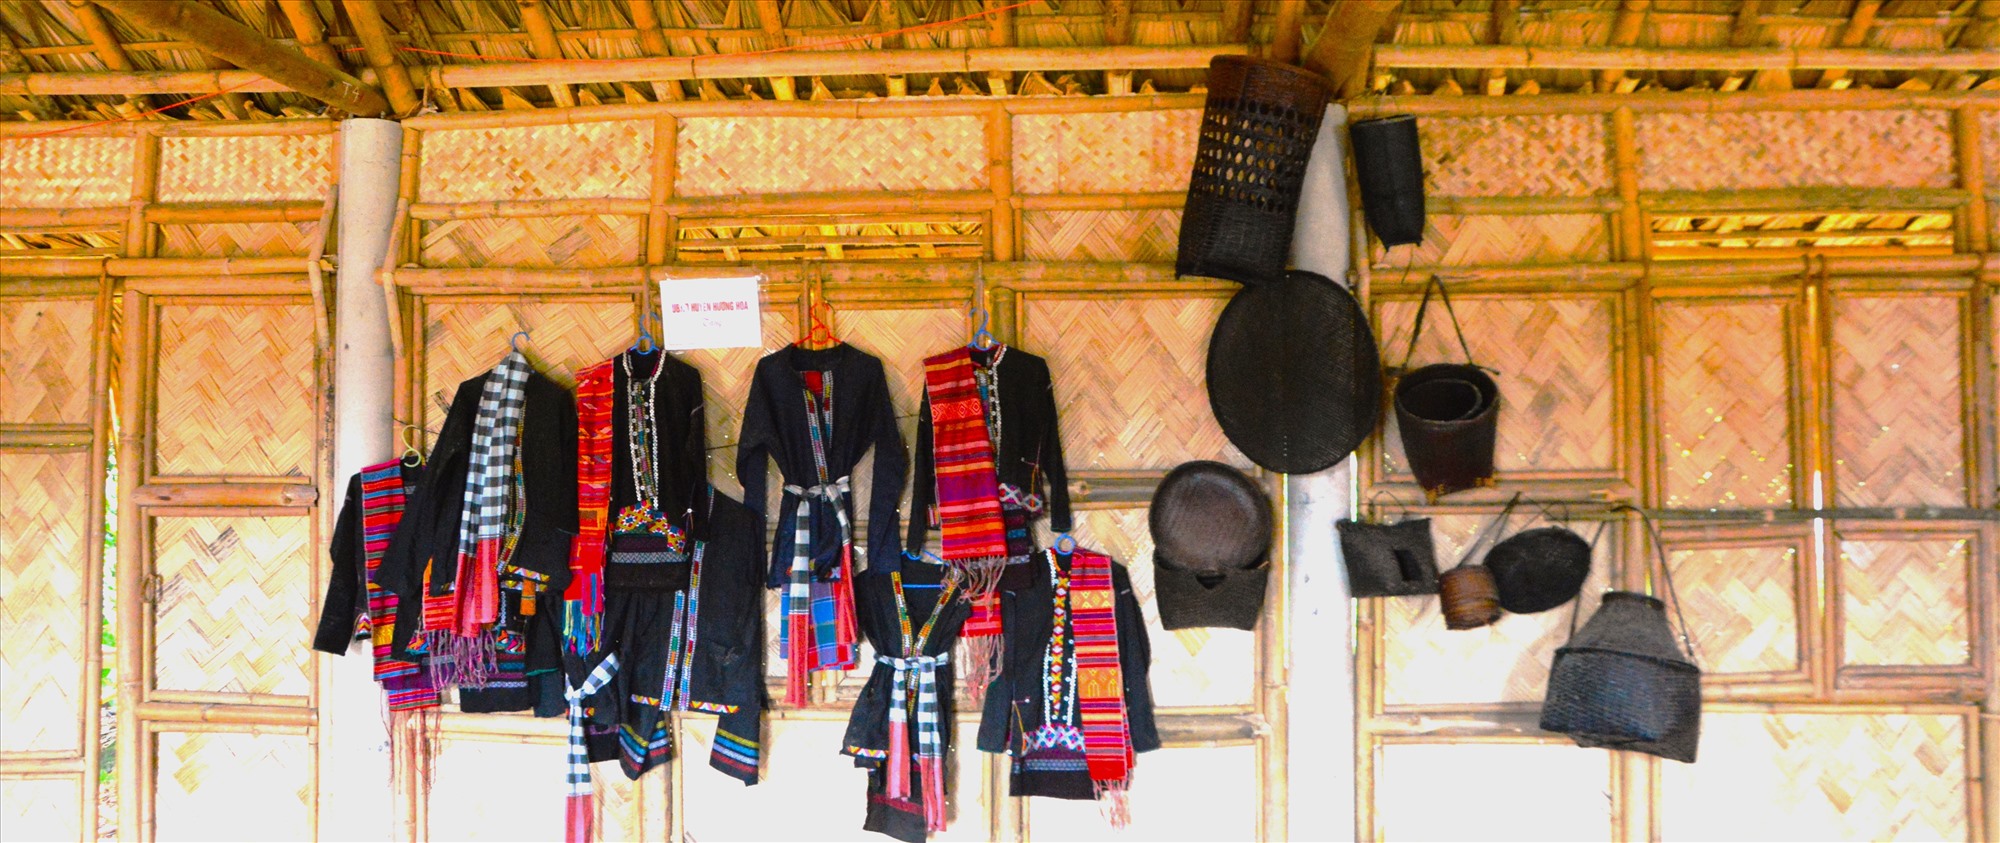 Những trang phục, dụng cụ lao động của người đồng bào Vân Kiều được trưng bày tại nhà sàn truyền thống ở cụm dân cư Rờ Ve